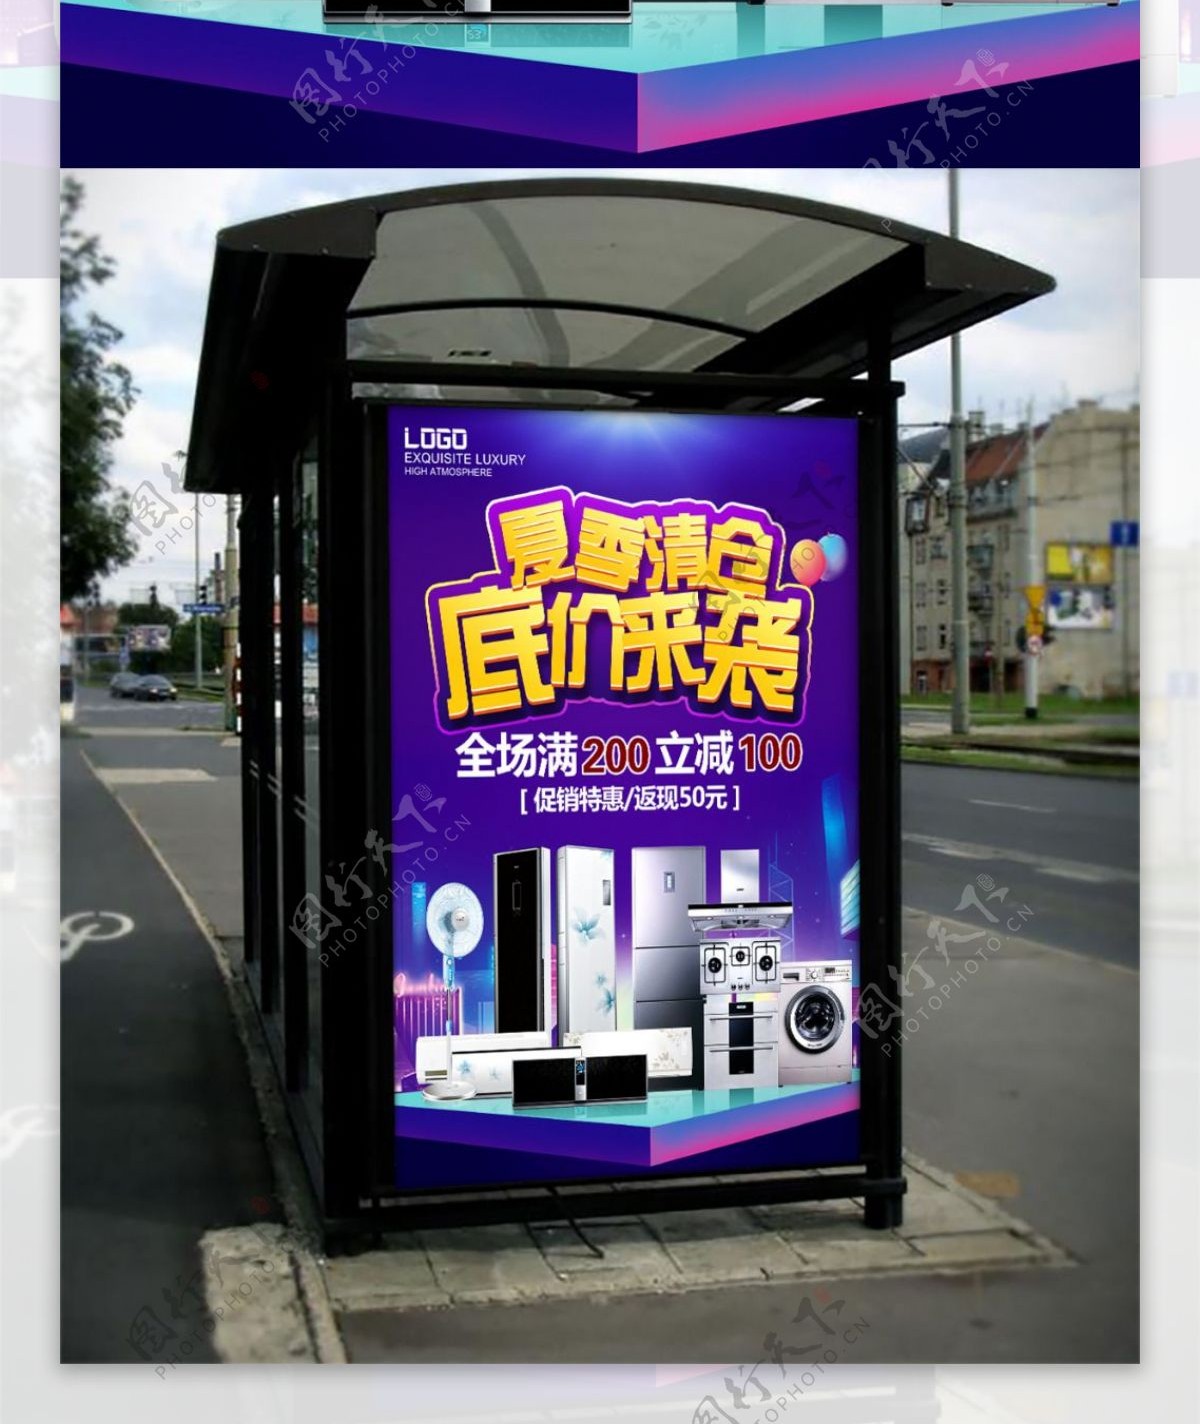 夏季清仓家用电器促销活动海报